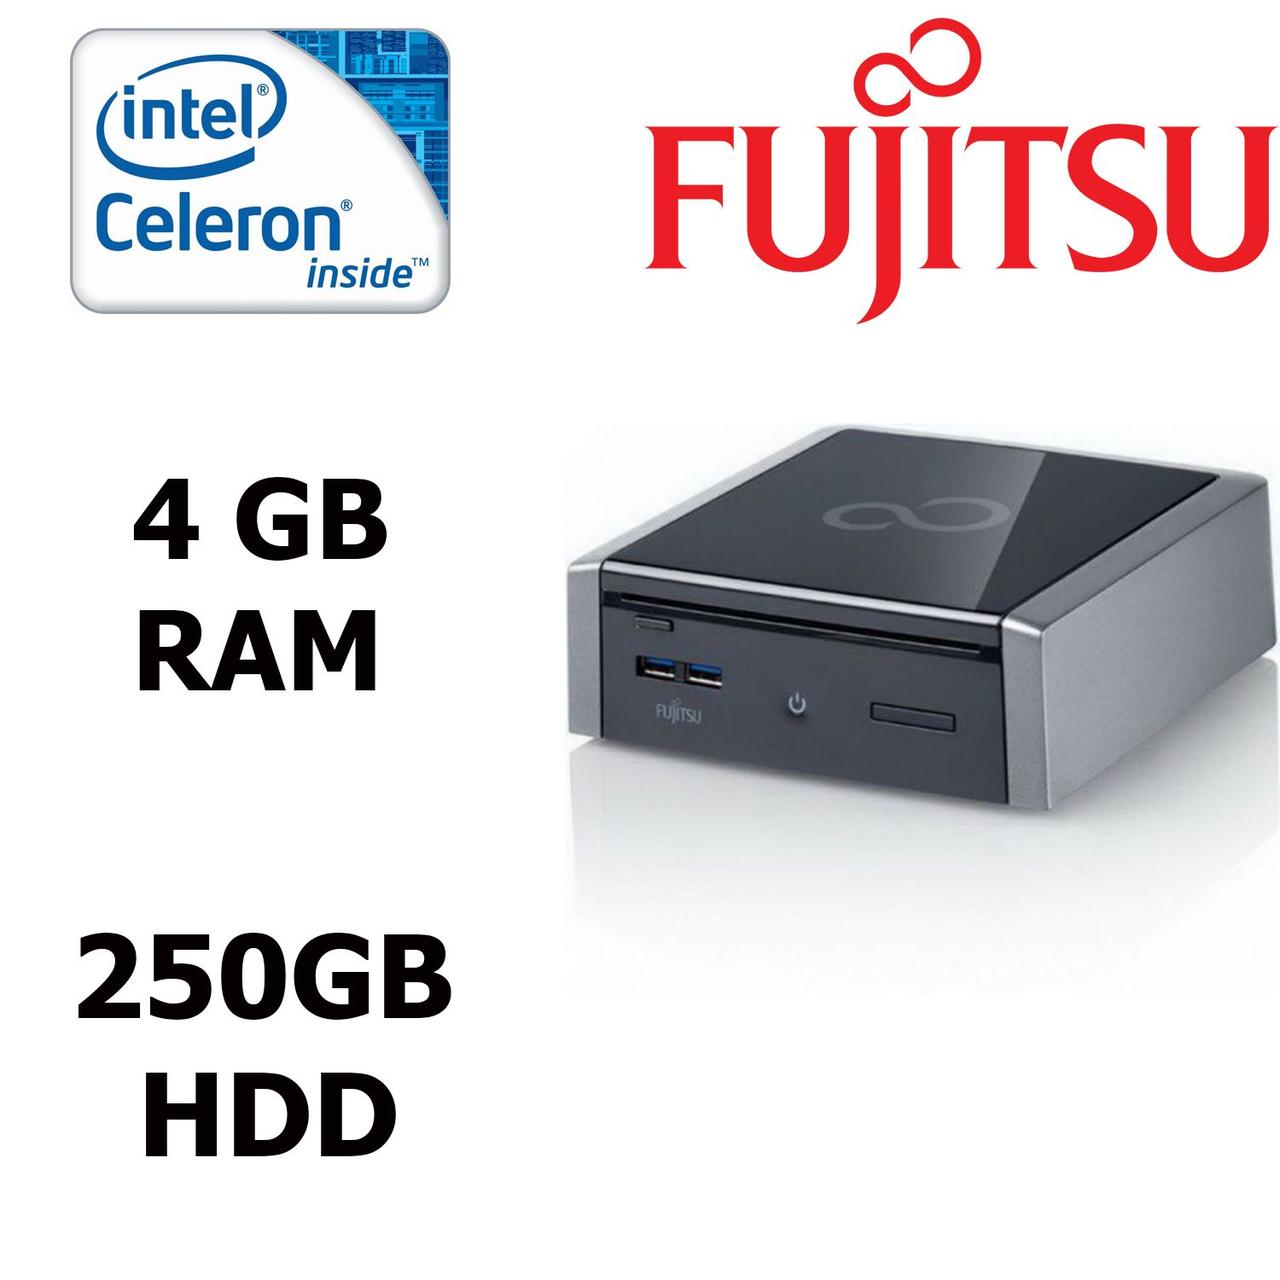 Fujitsu Simens Q900 USFF / Intel® Celeron® B800 (2 ядра по 1.5 GHz) / 4GB DDR3 / 250GB HDD / PCI 2.0